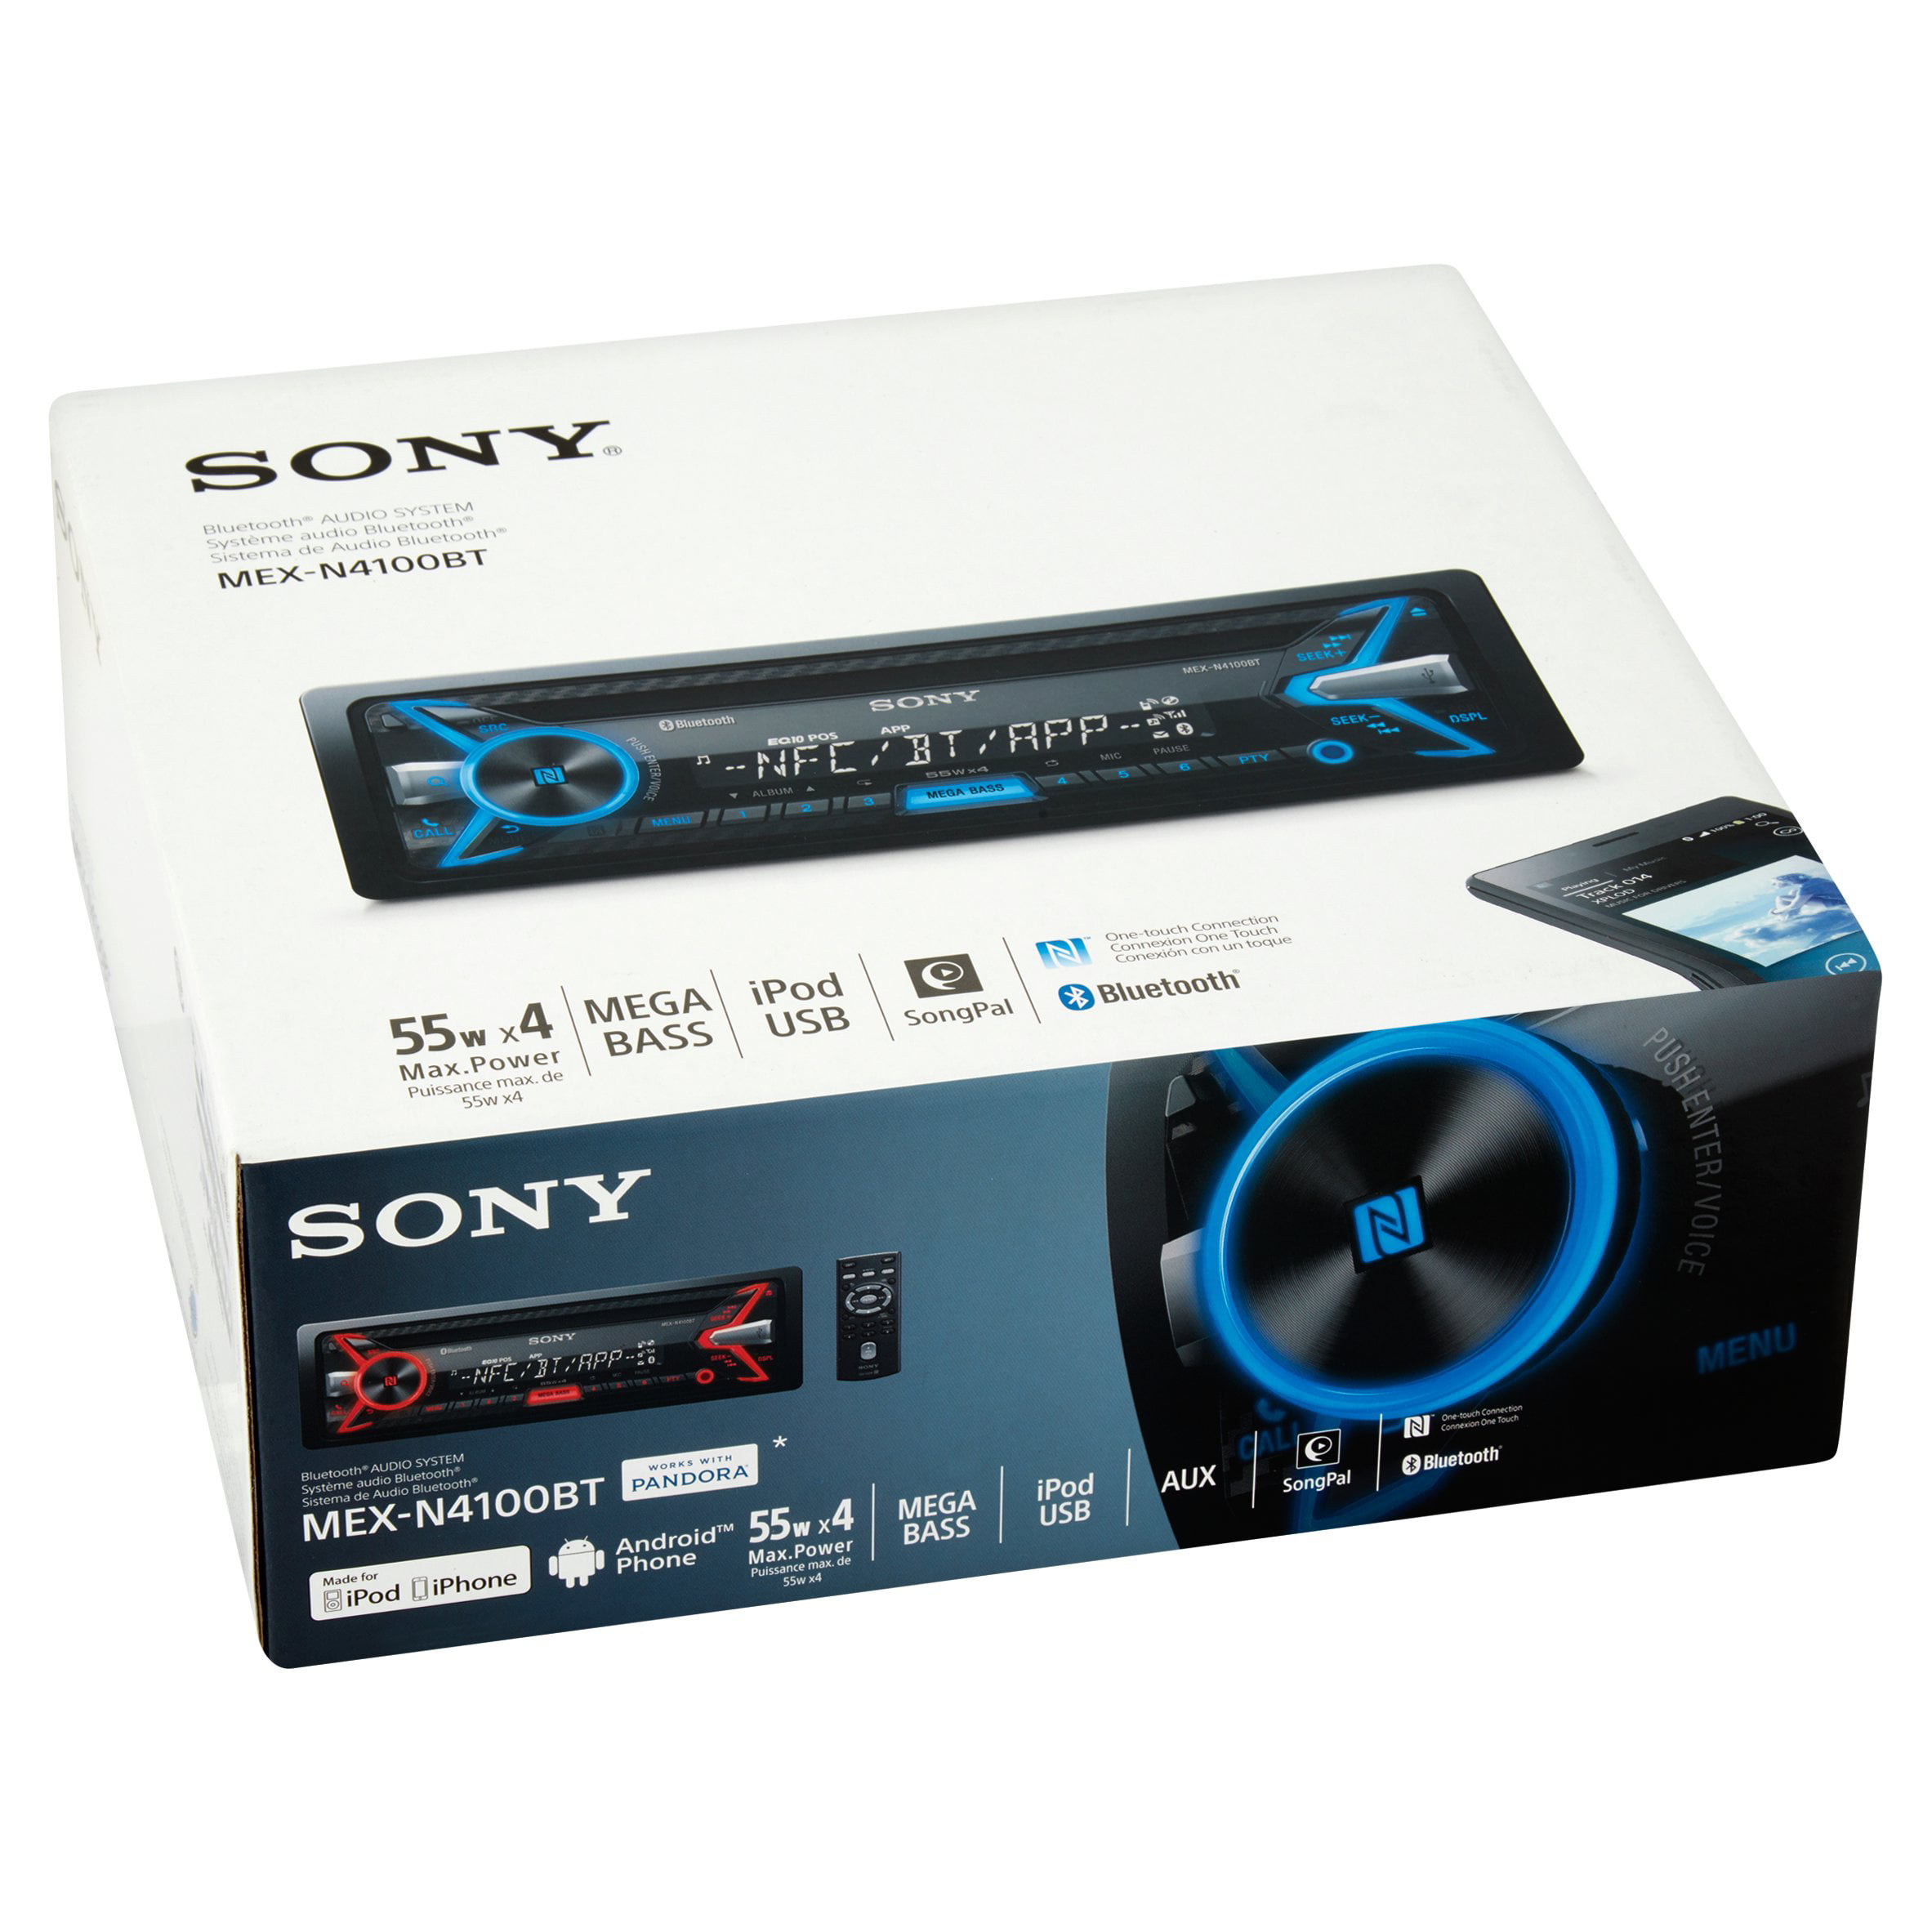 Sony Bluetooth Audio System Mex N4100bt